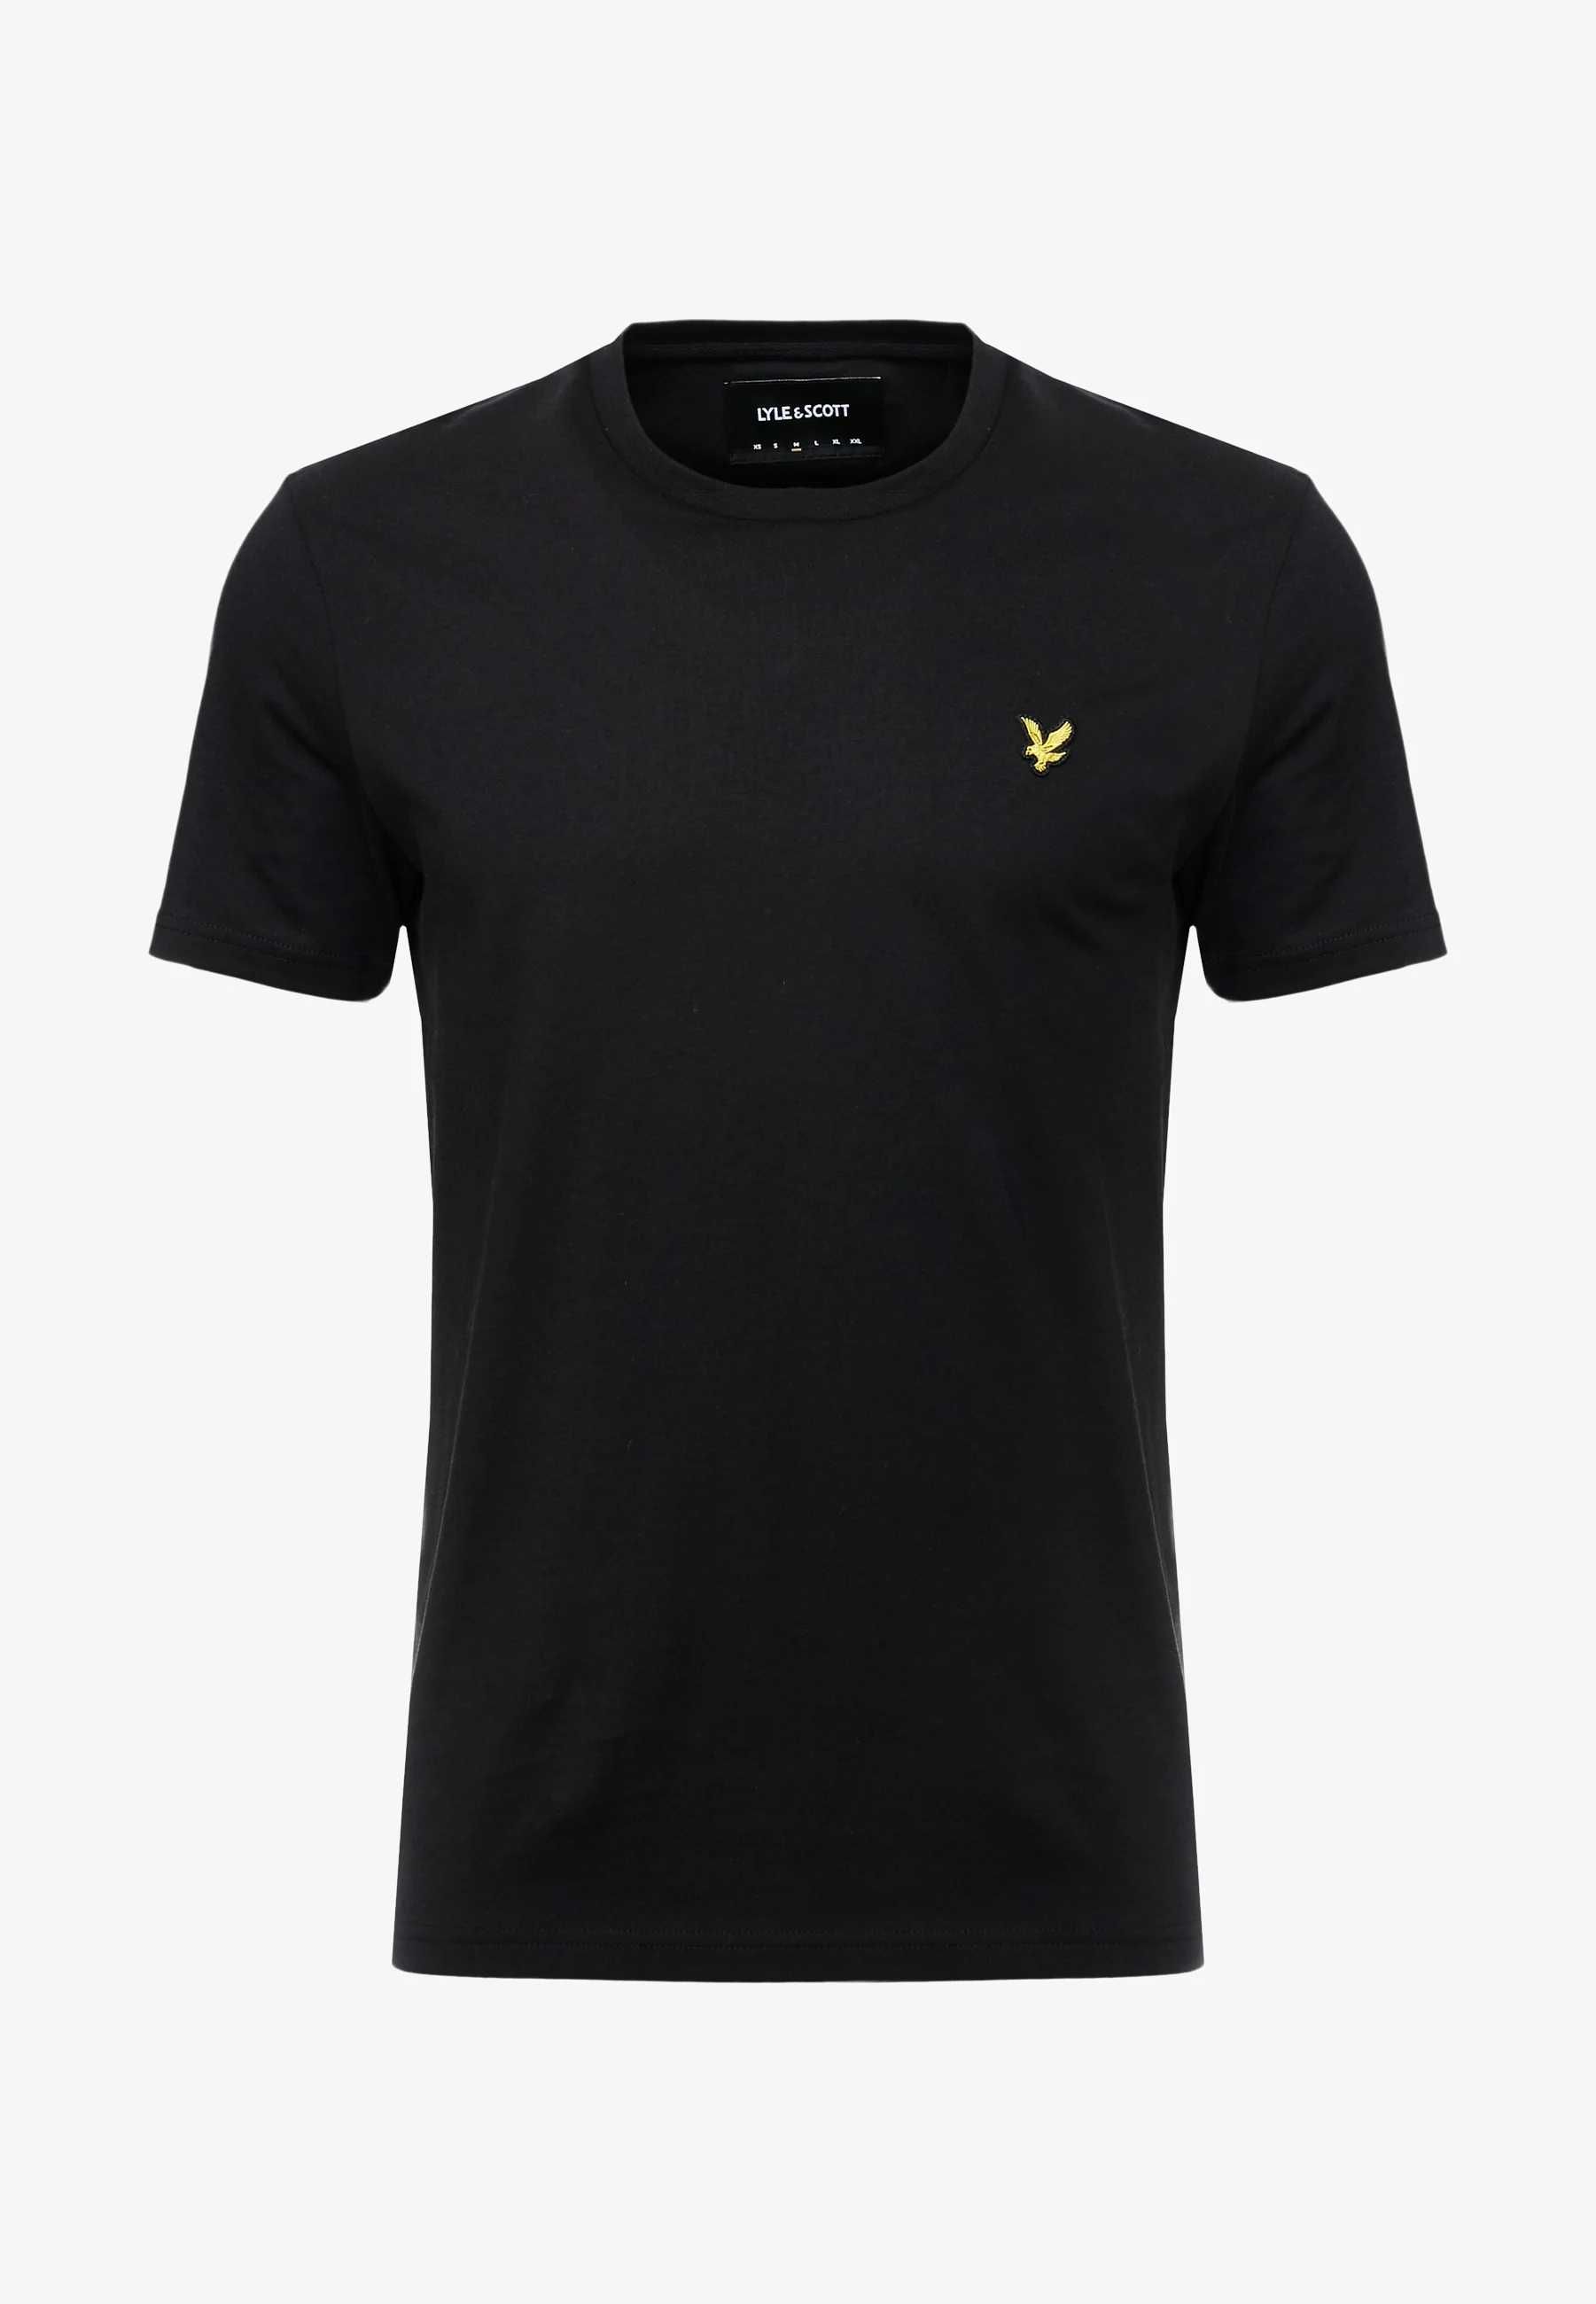 100% Oryginalny czarny T-shirt LYLE&SCOTT koszulka czarna sklep149zł